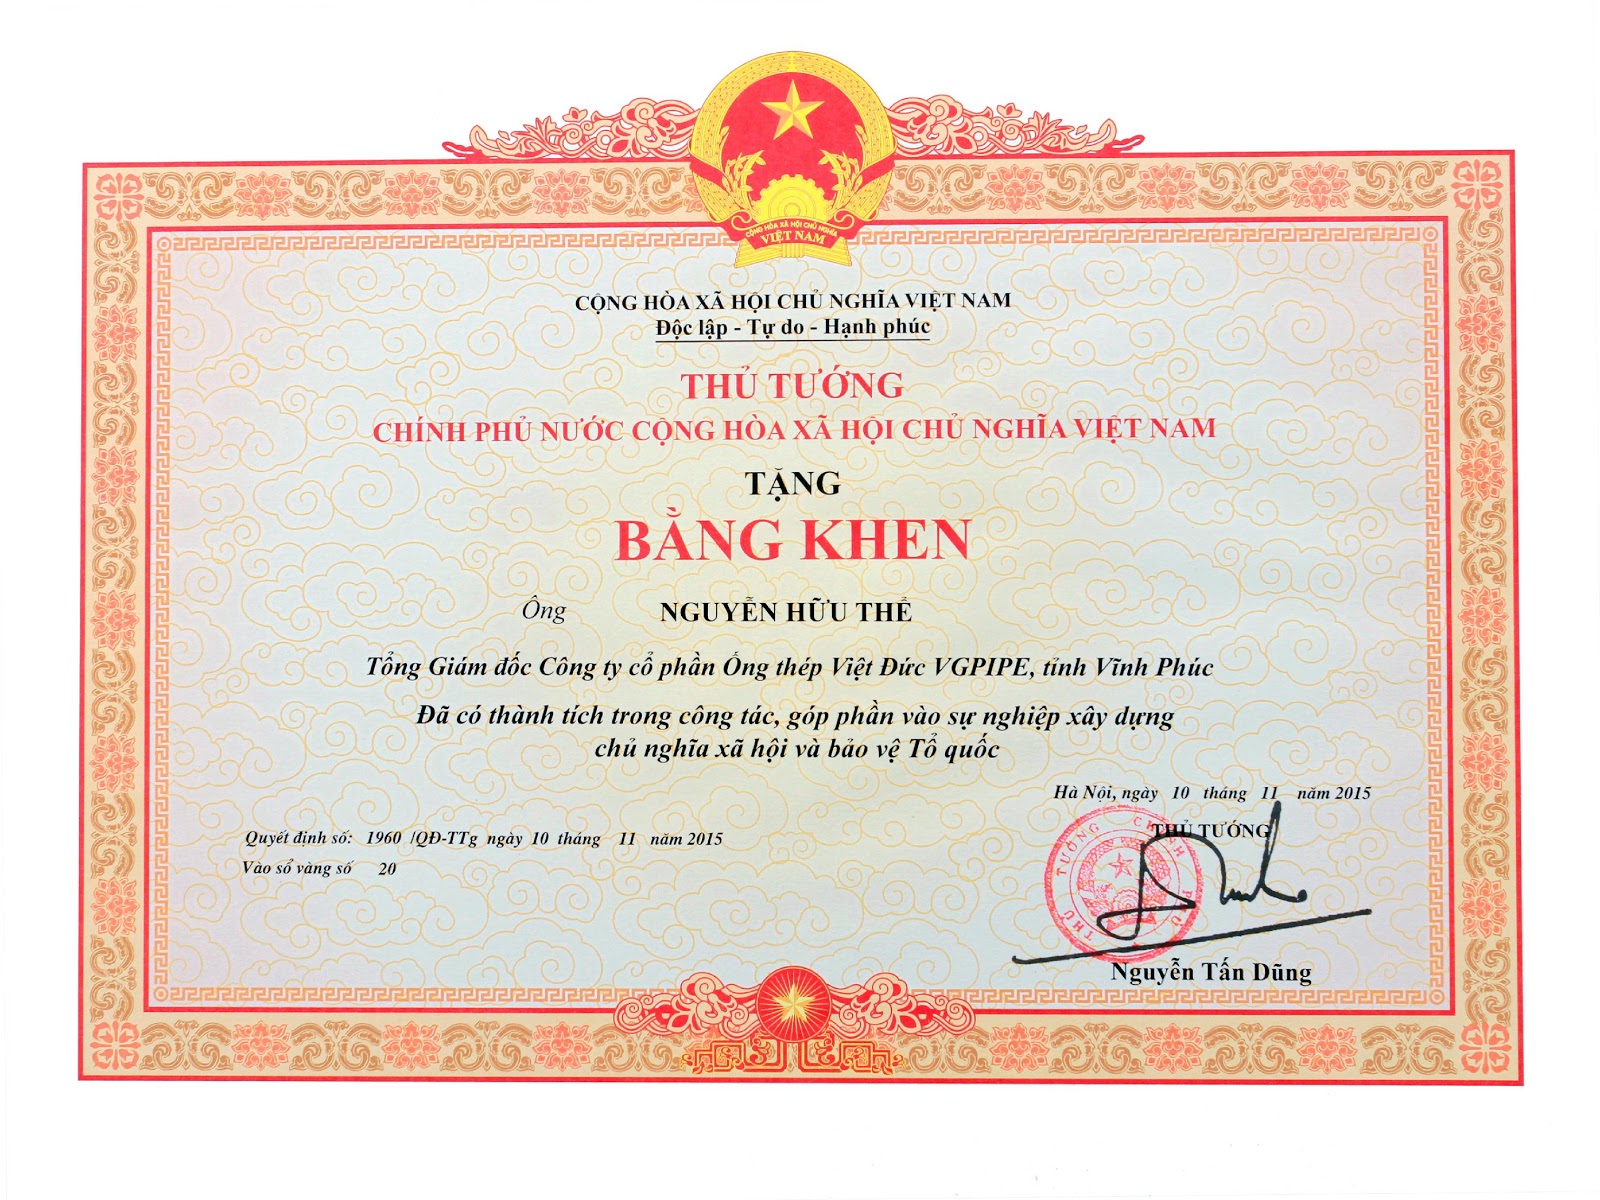 Tổng giám đốc và Phó Tổng giám đốc Công ty CP Ống Thép Việt Đức (VGS) được Thủ tướng Chính phủ tặng bằng khen